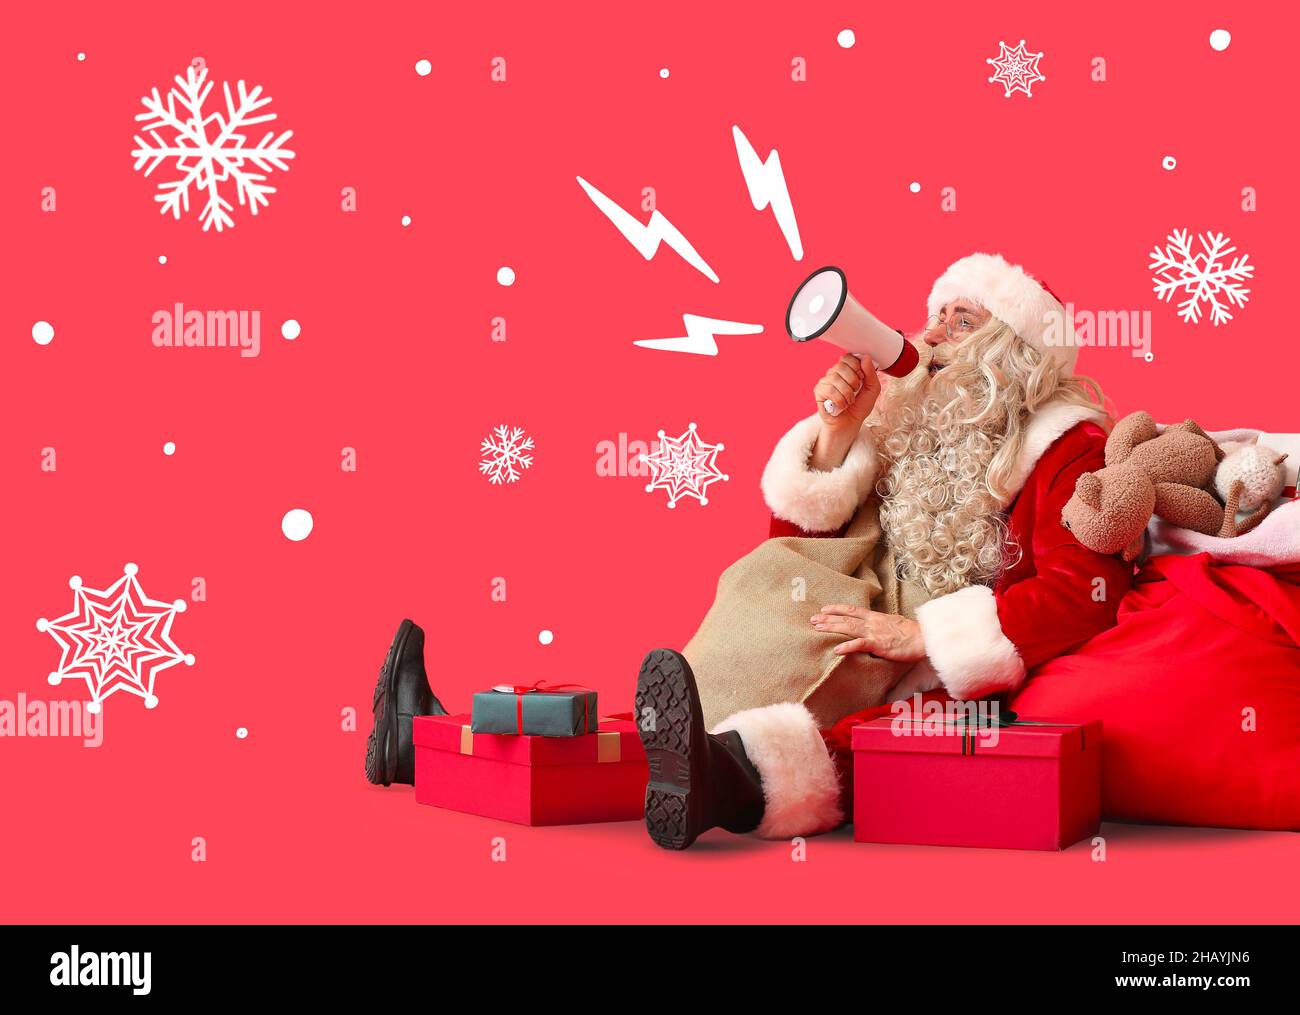 Weihnachtsmann mit Megaphon, Tasche und Geschenken auf rotem Hintergrund Stockfoto